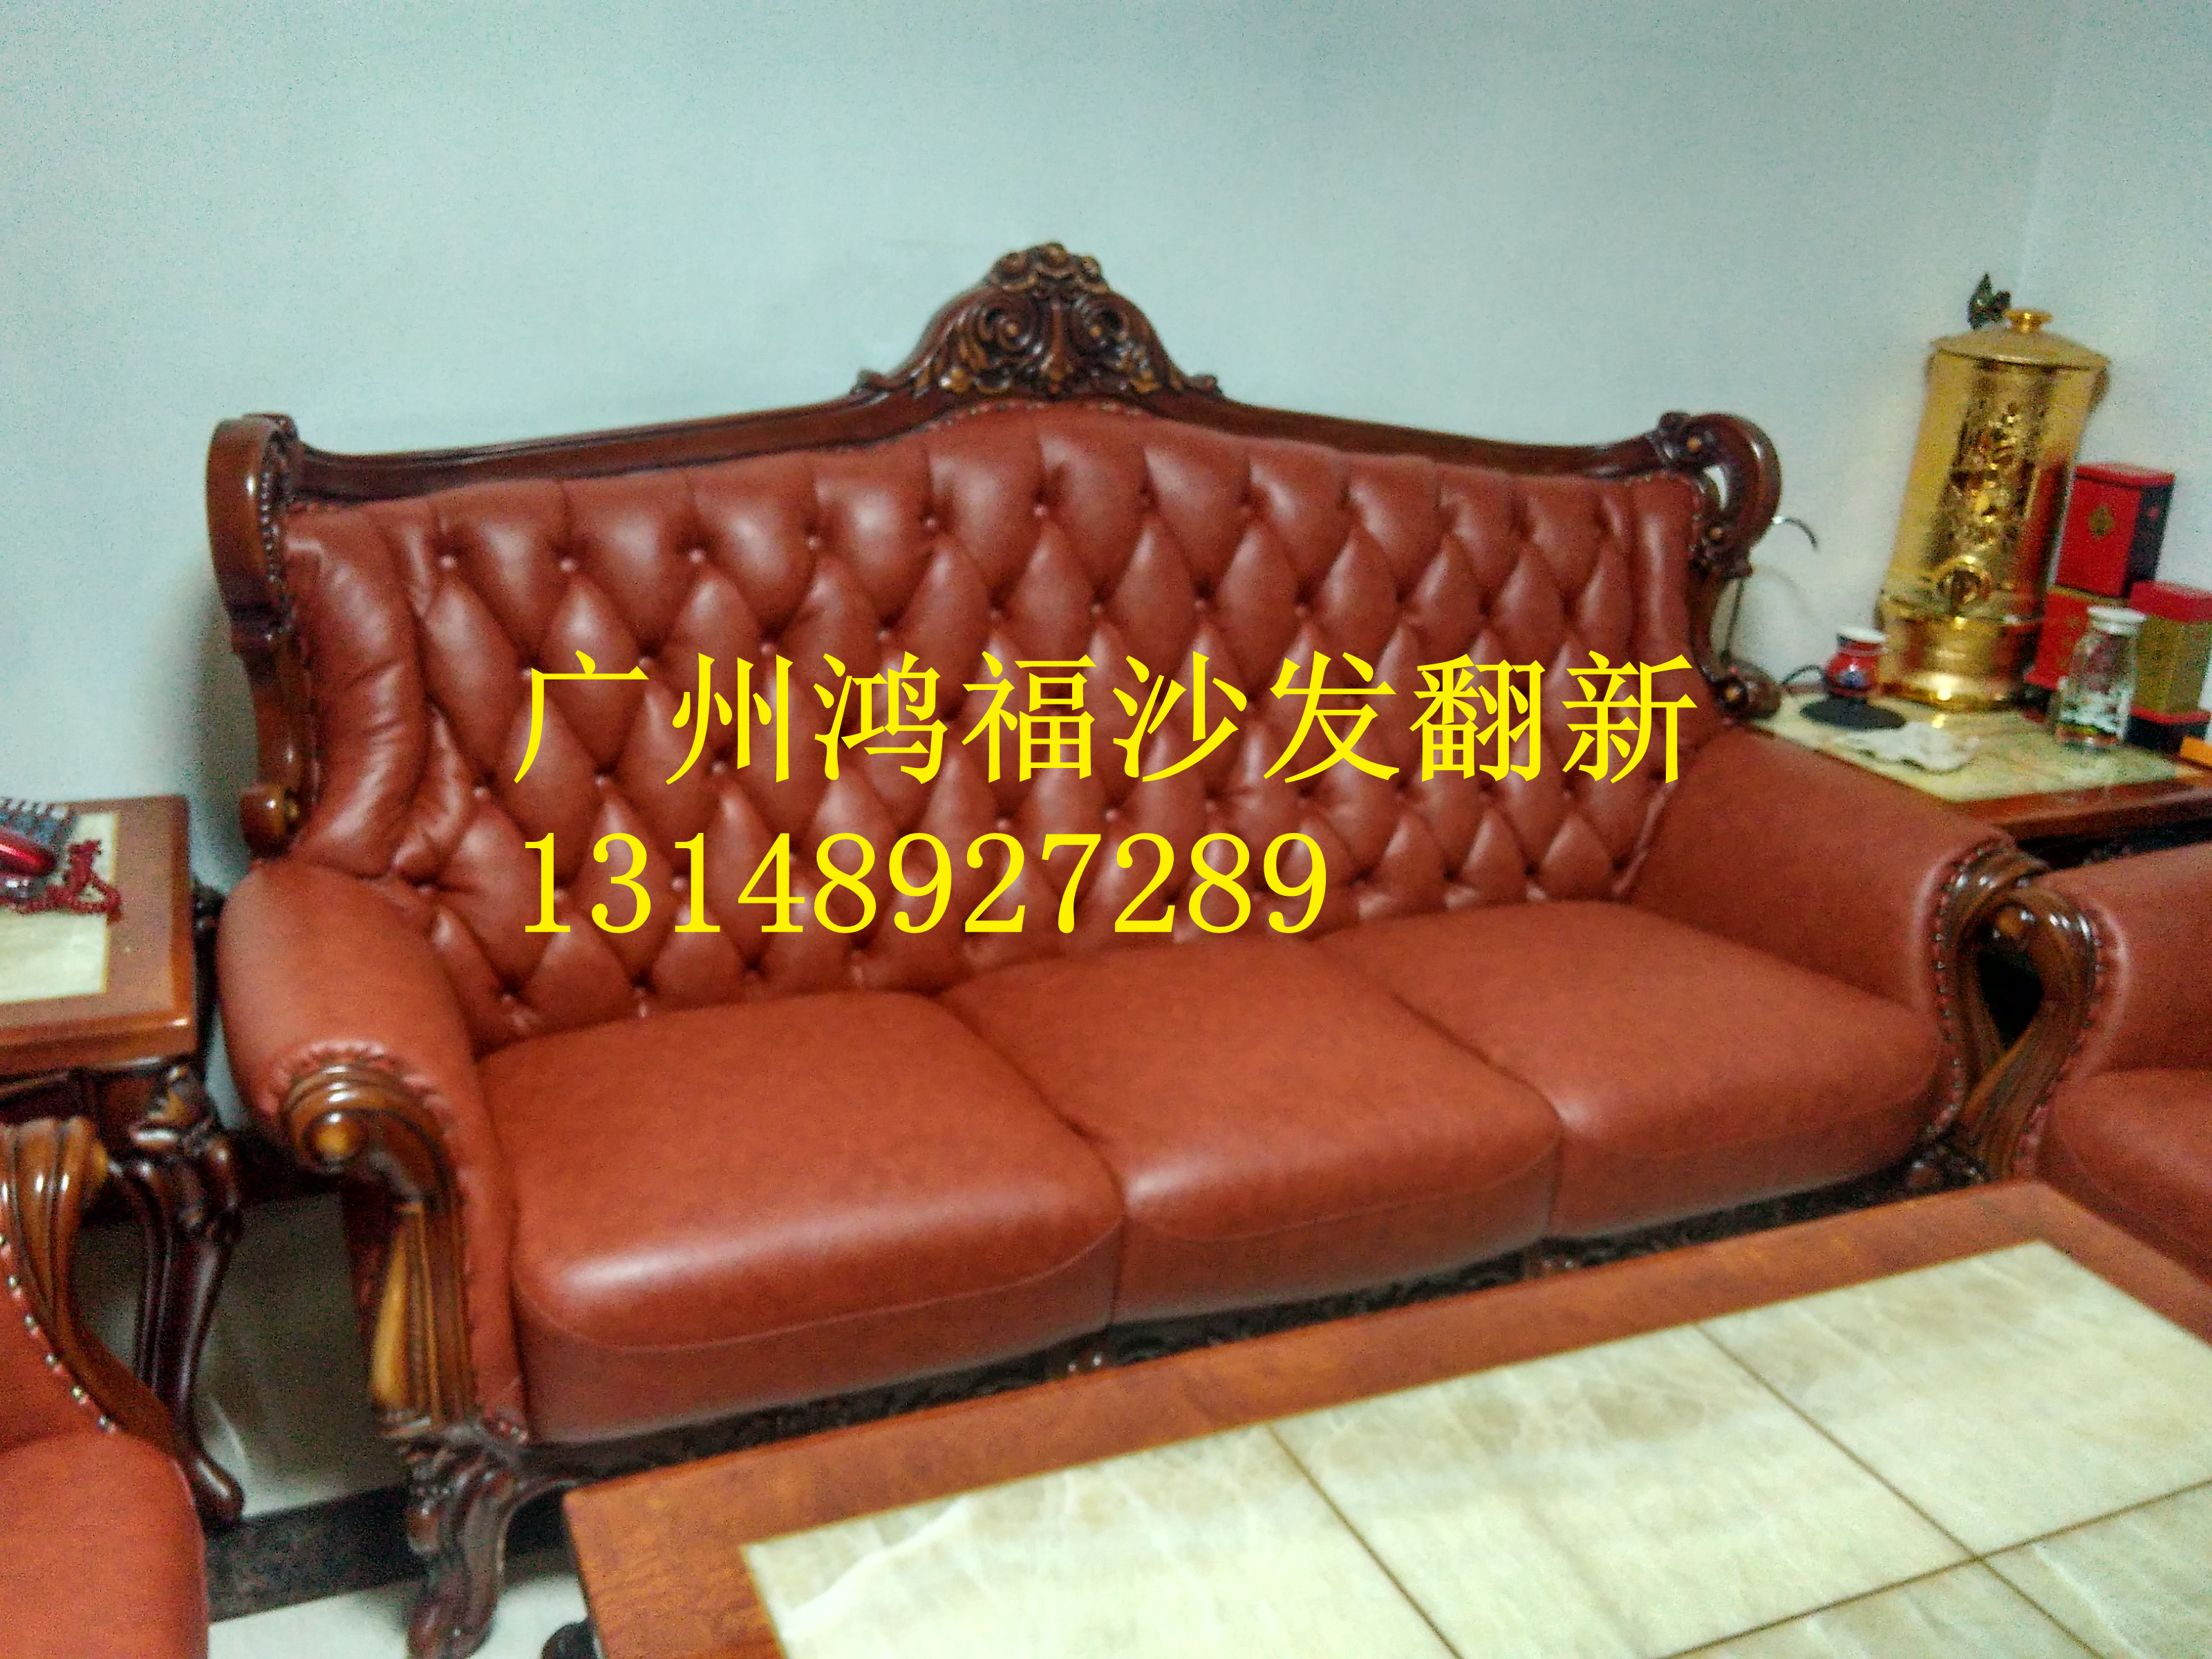 供应广州番禺区专业沙发翻新价格、换皮